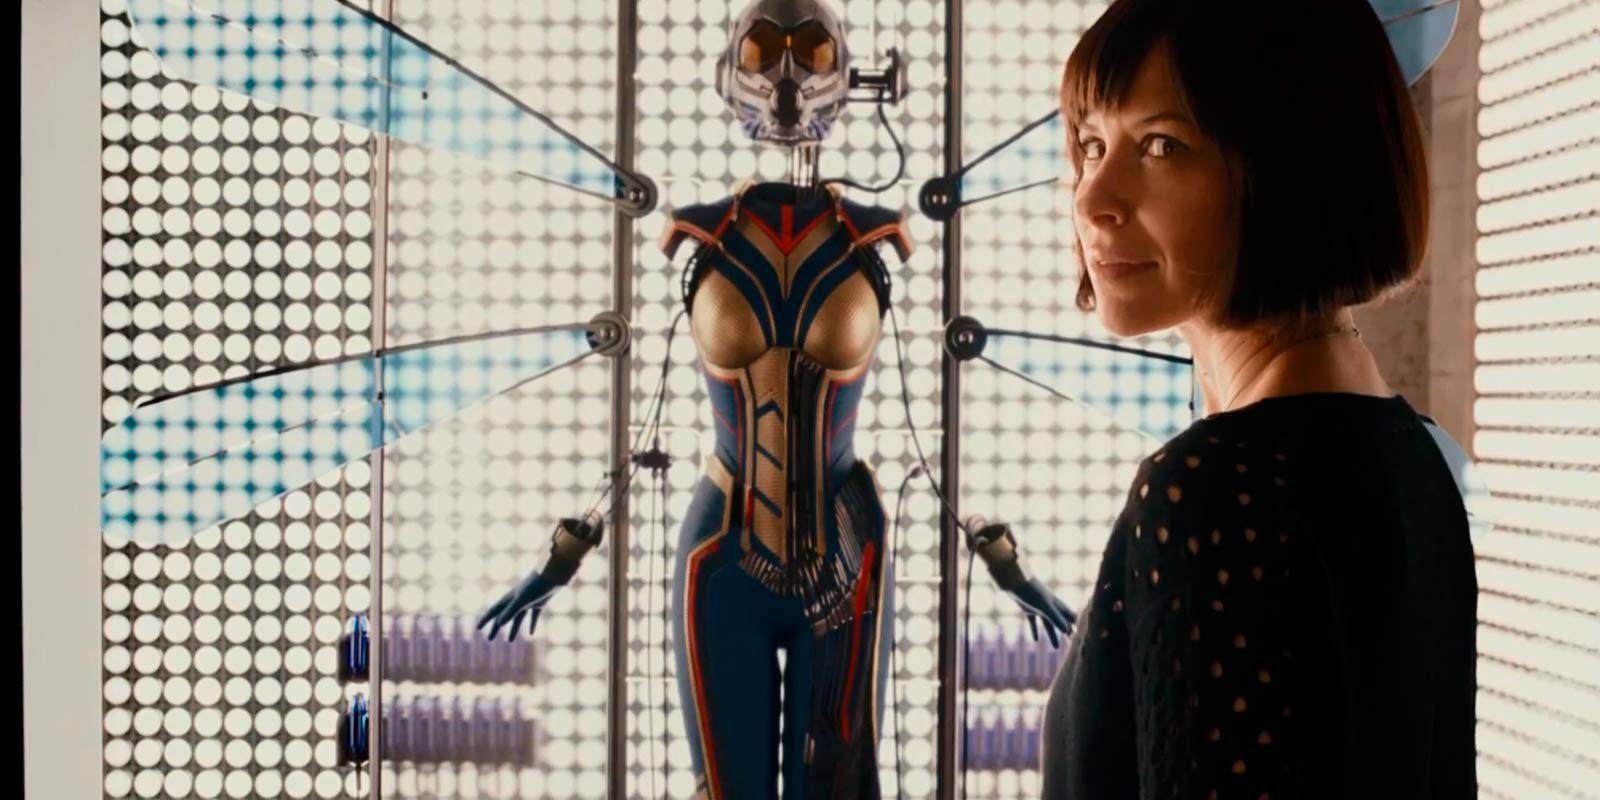 Primera imagen de Evangeline Lilly con su uniforme en 'Ant-Man y la Avispa'